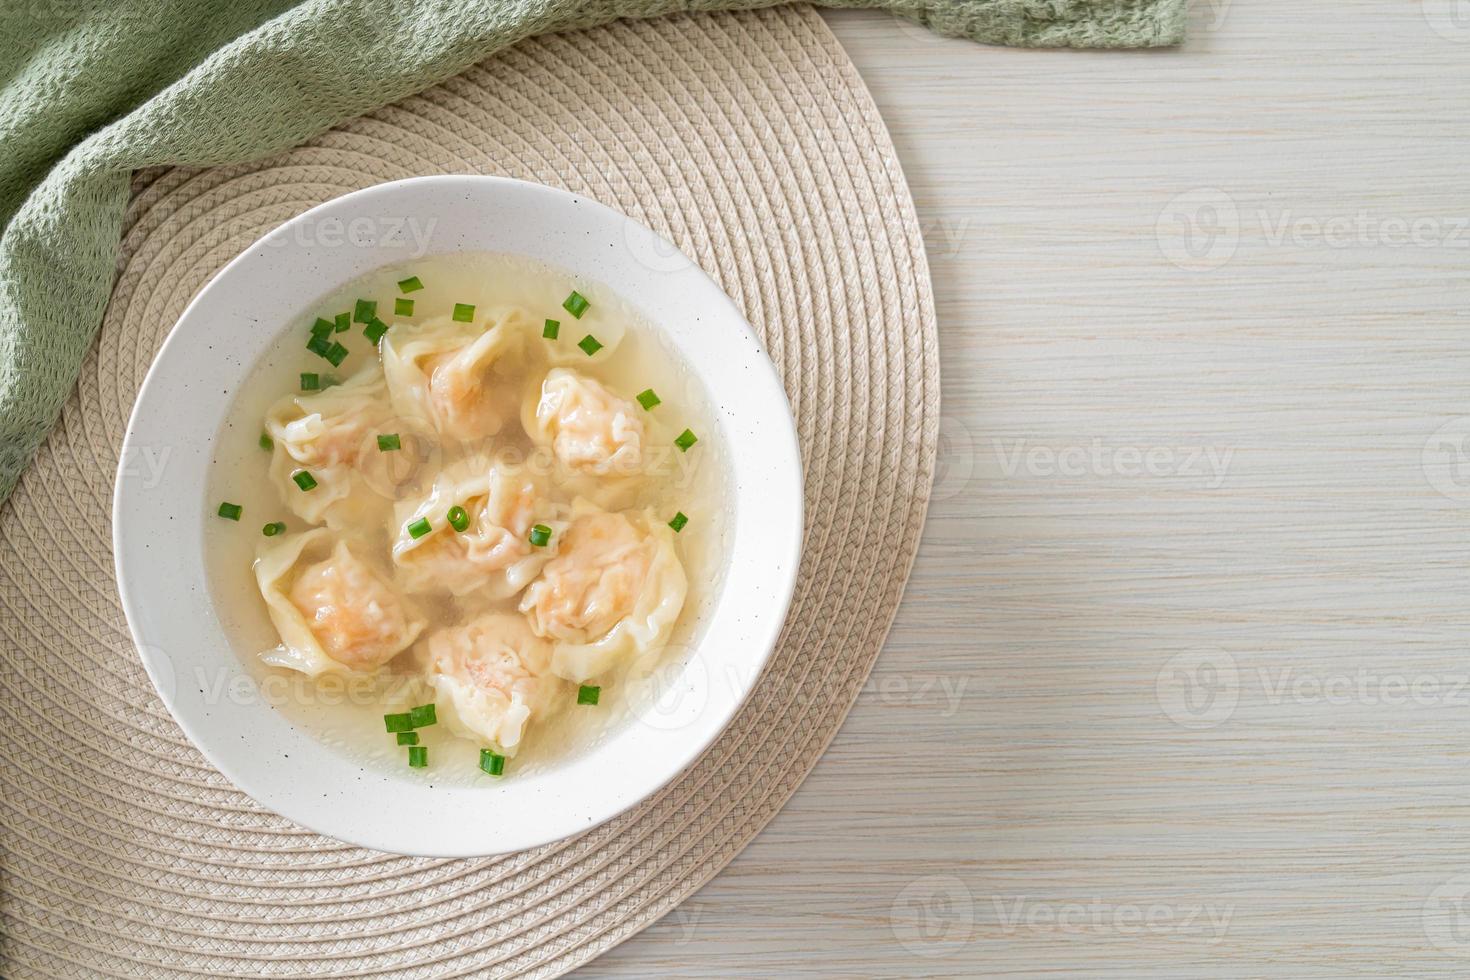 sopa de bolinho de camarão em tigela branca foto